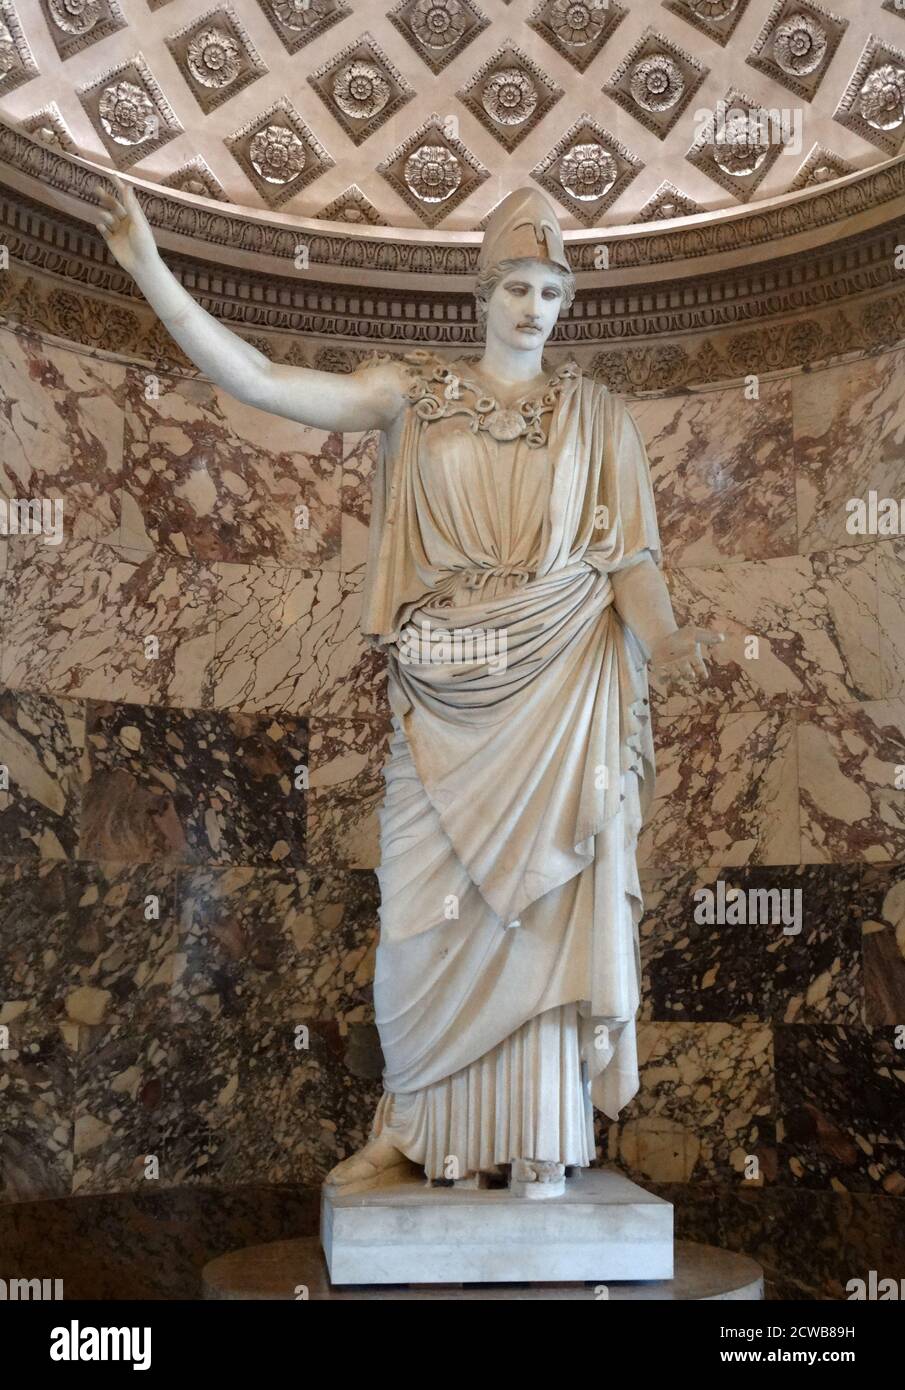 Eine Athena von Velletri - eine klassische Marmorstatue von Athena, die einen Helm trägt. Stockfoto